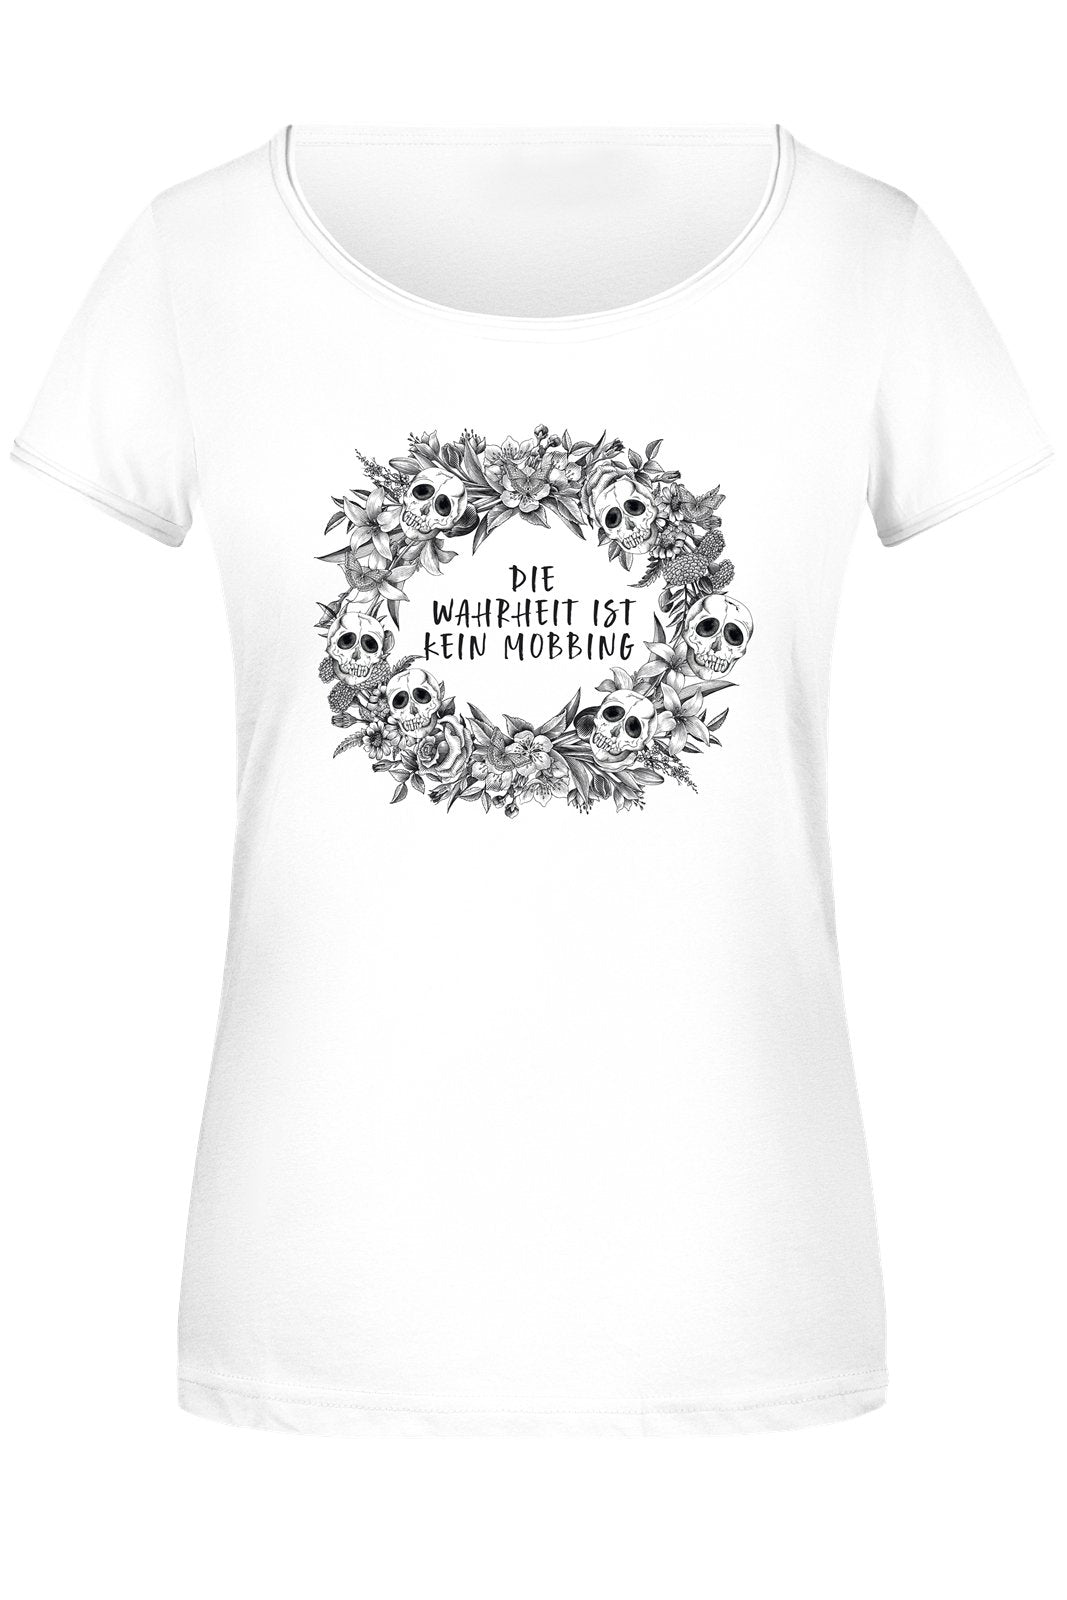 Bild: T-Shirt Damen - Die Wahrheit ist kein Mobbing - Skull Statement Geschenkidee